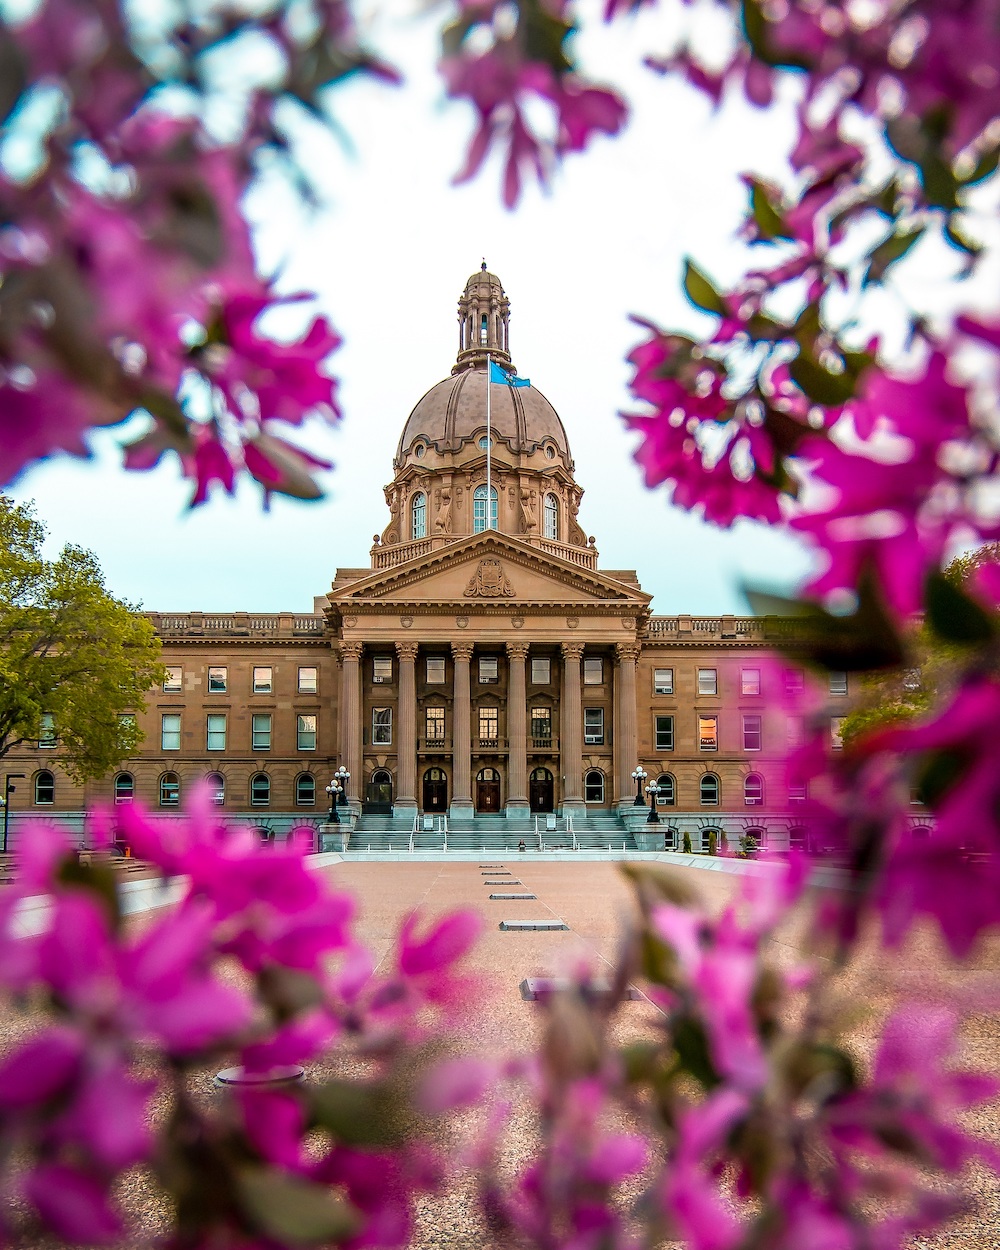 Edmonton_Legislature Building_Raymond_Dam